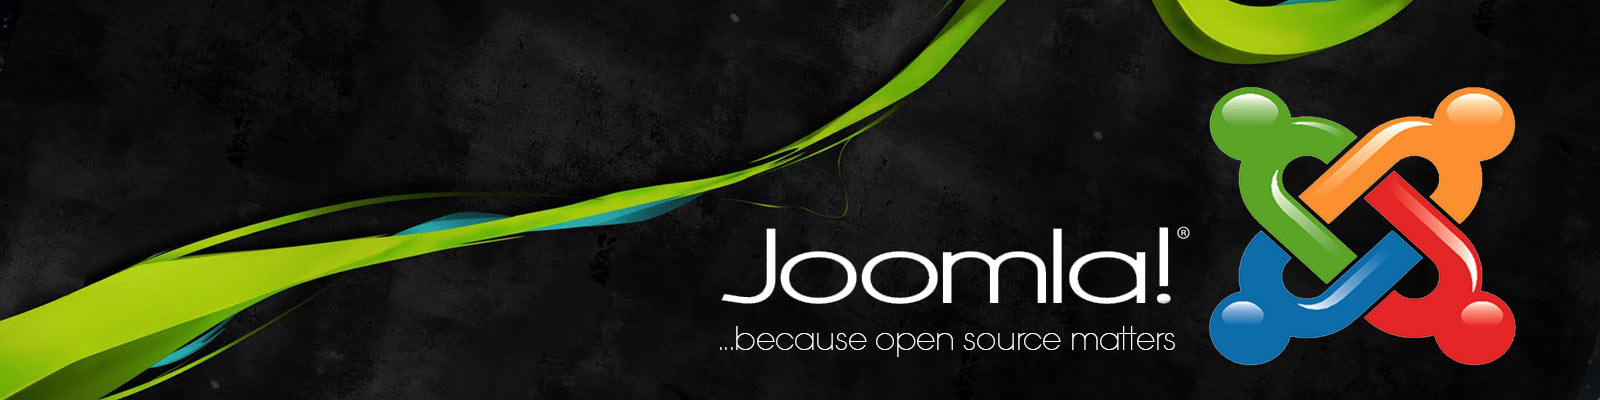 joomla website development